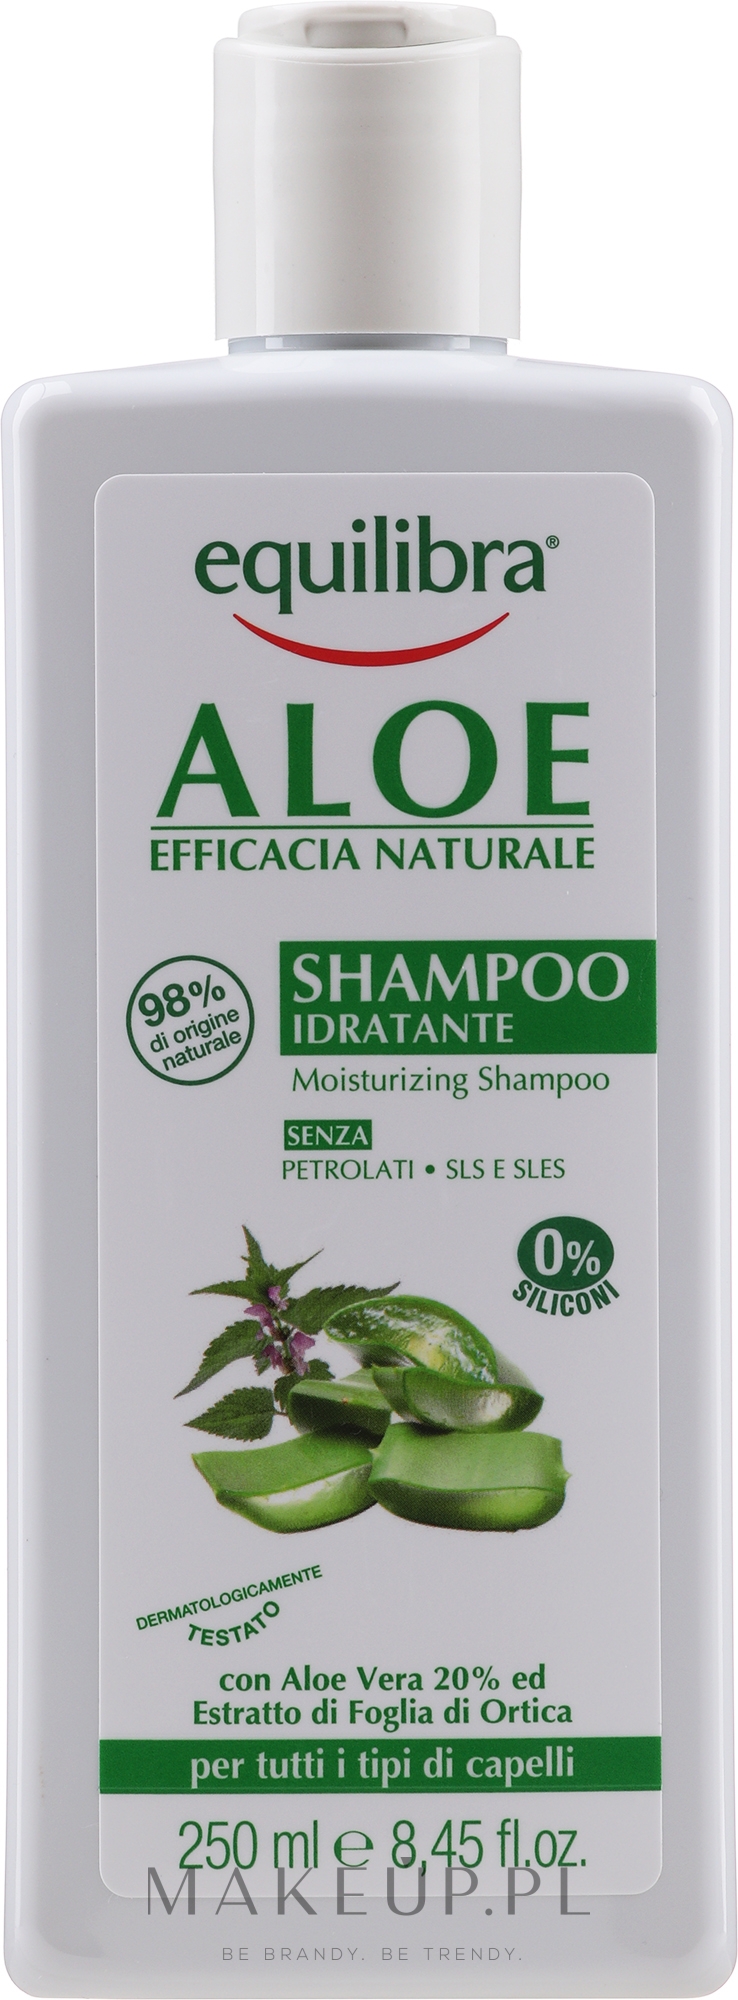 equilibra nawilżający szampon aloesowy 20 aloe vera 250 ml